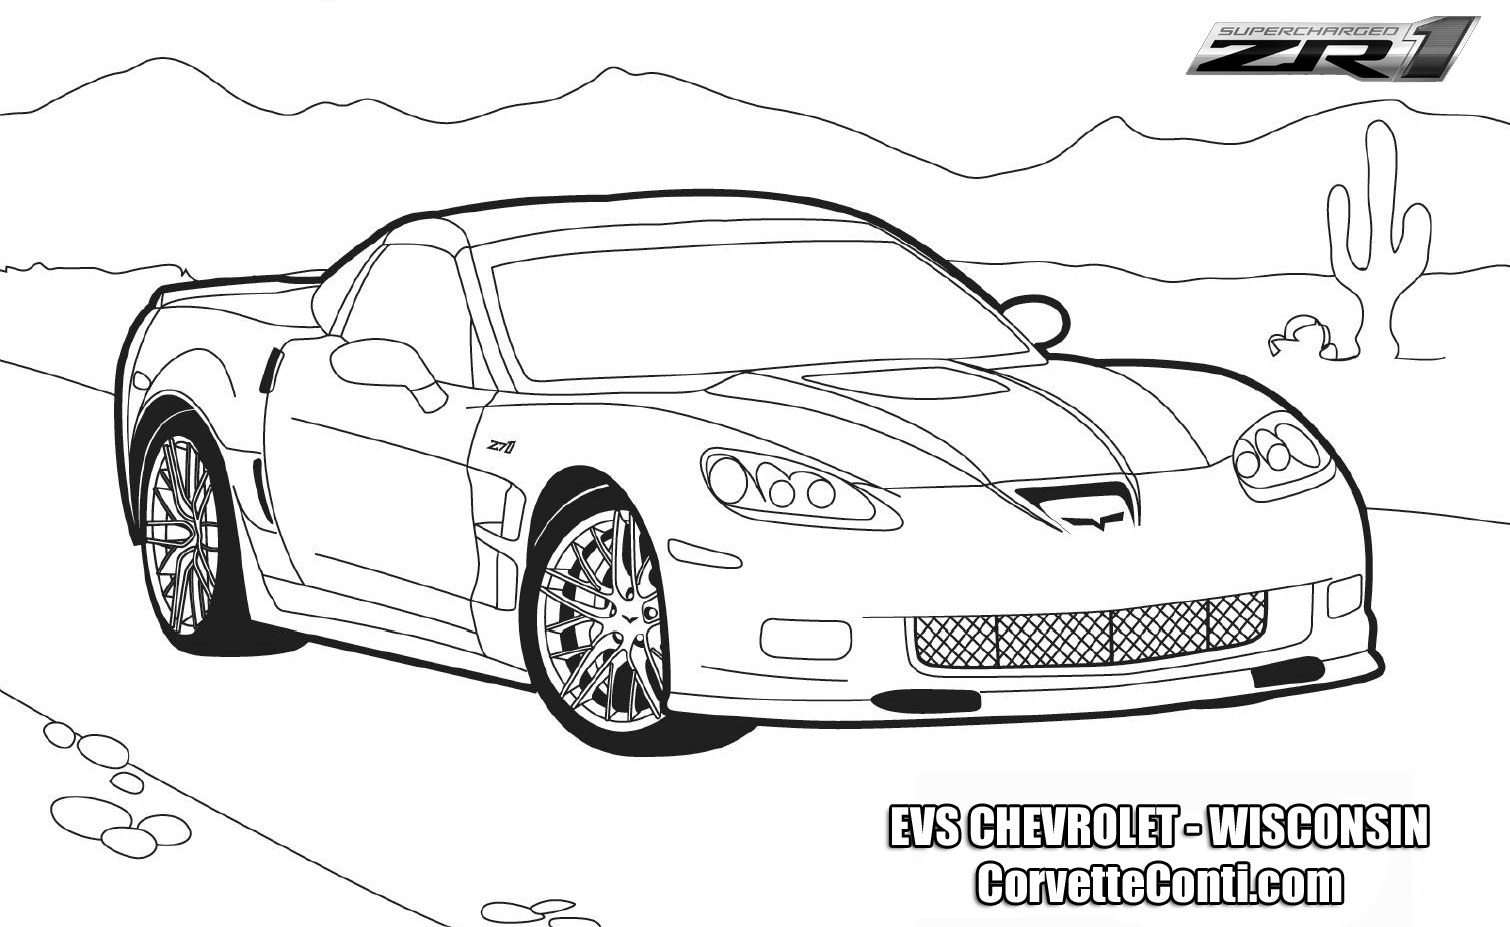  ZR1 Corvette CAR COLORING PAGES | Race car coloring pages